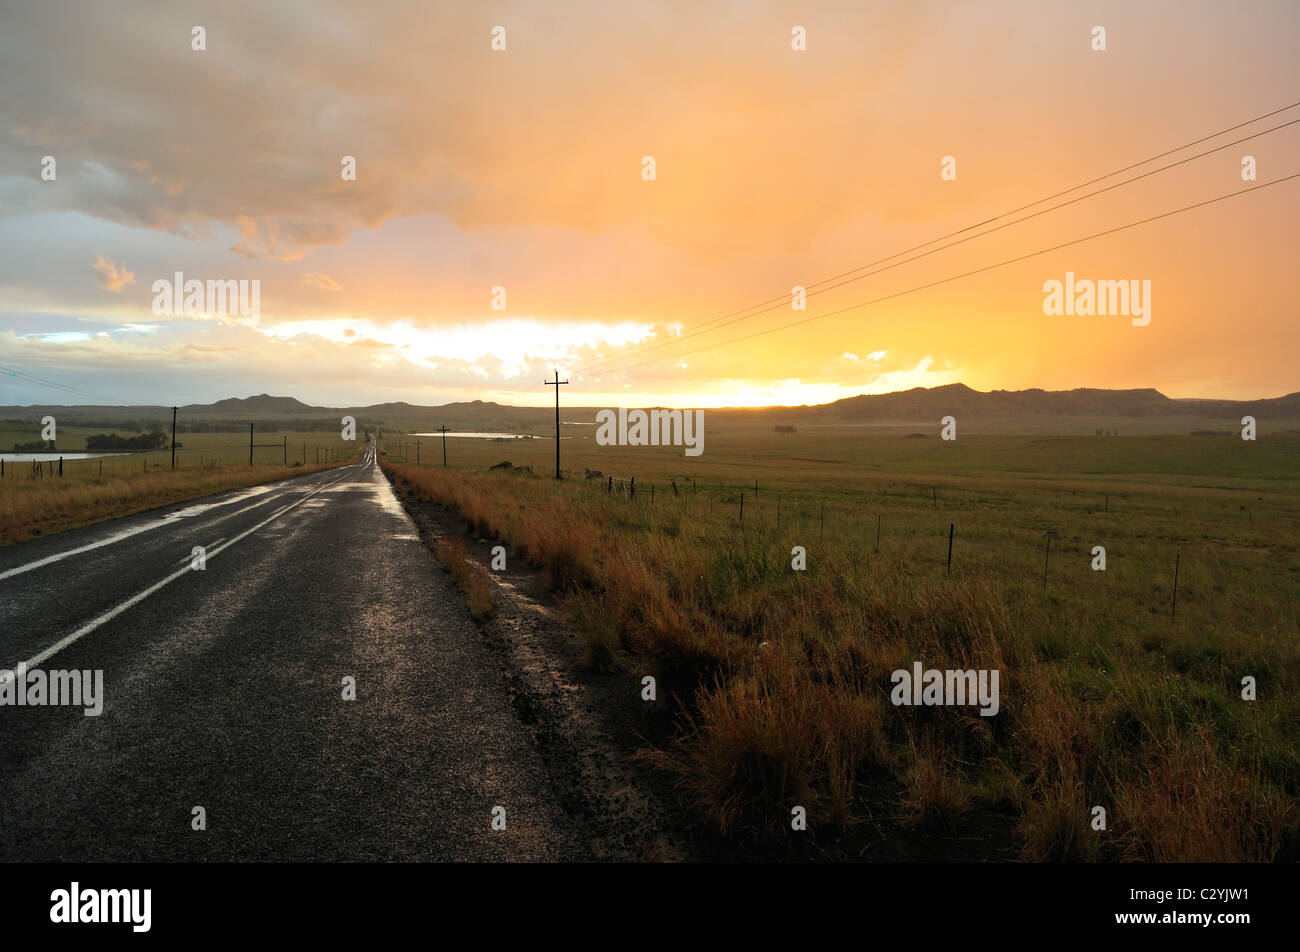 Impostazione del sole dopo la pioggia, Stato Libero Provincia, Sud Africa Foto Stock